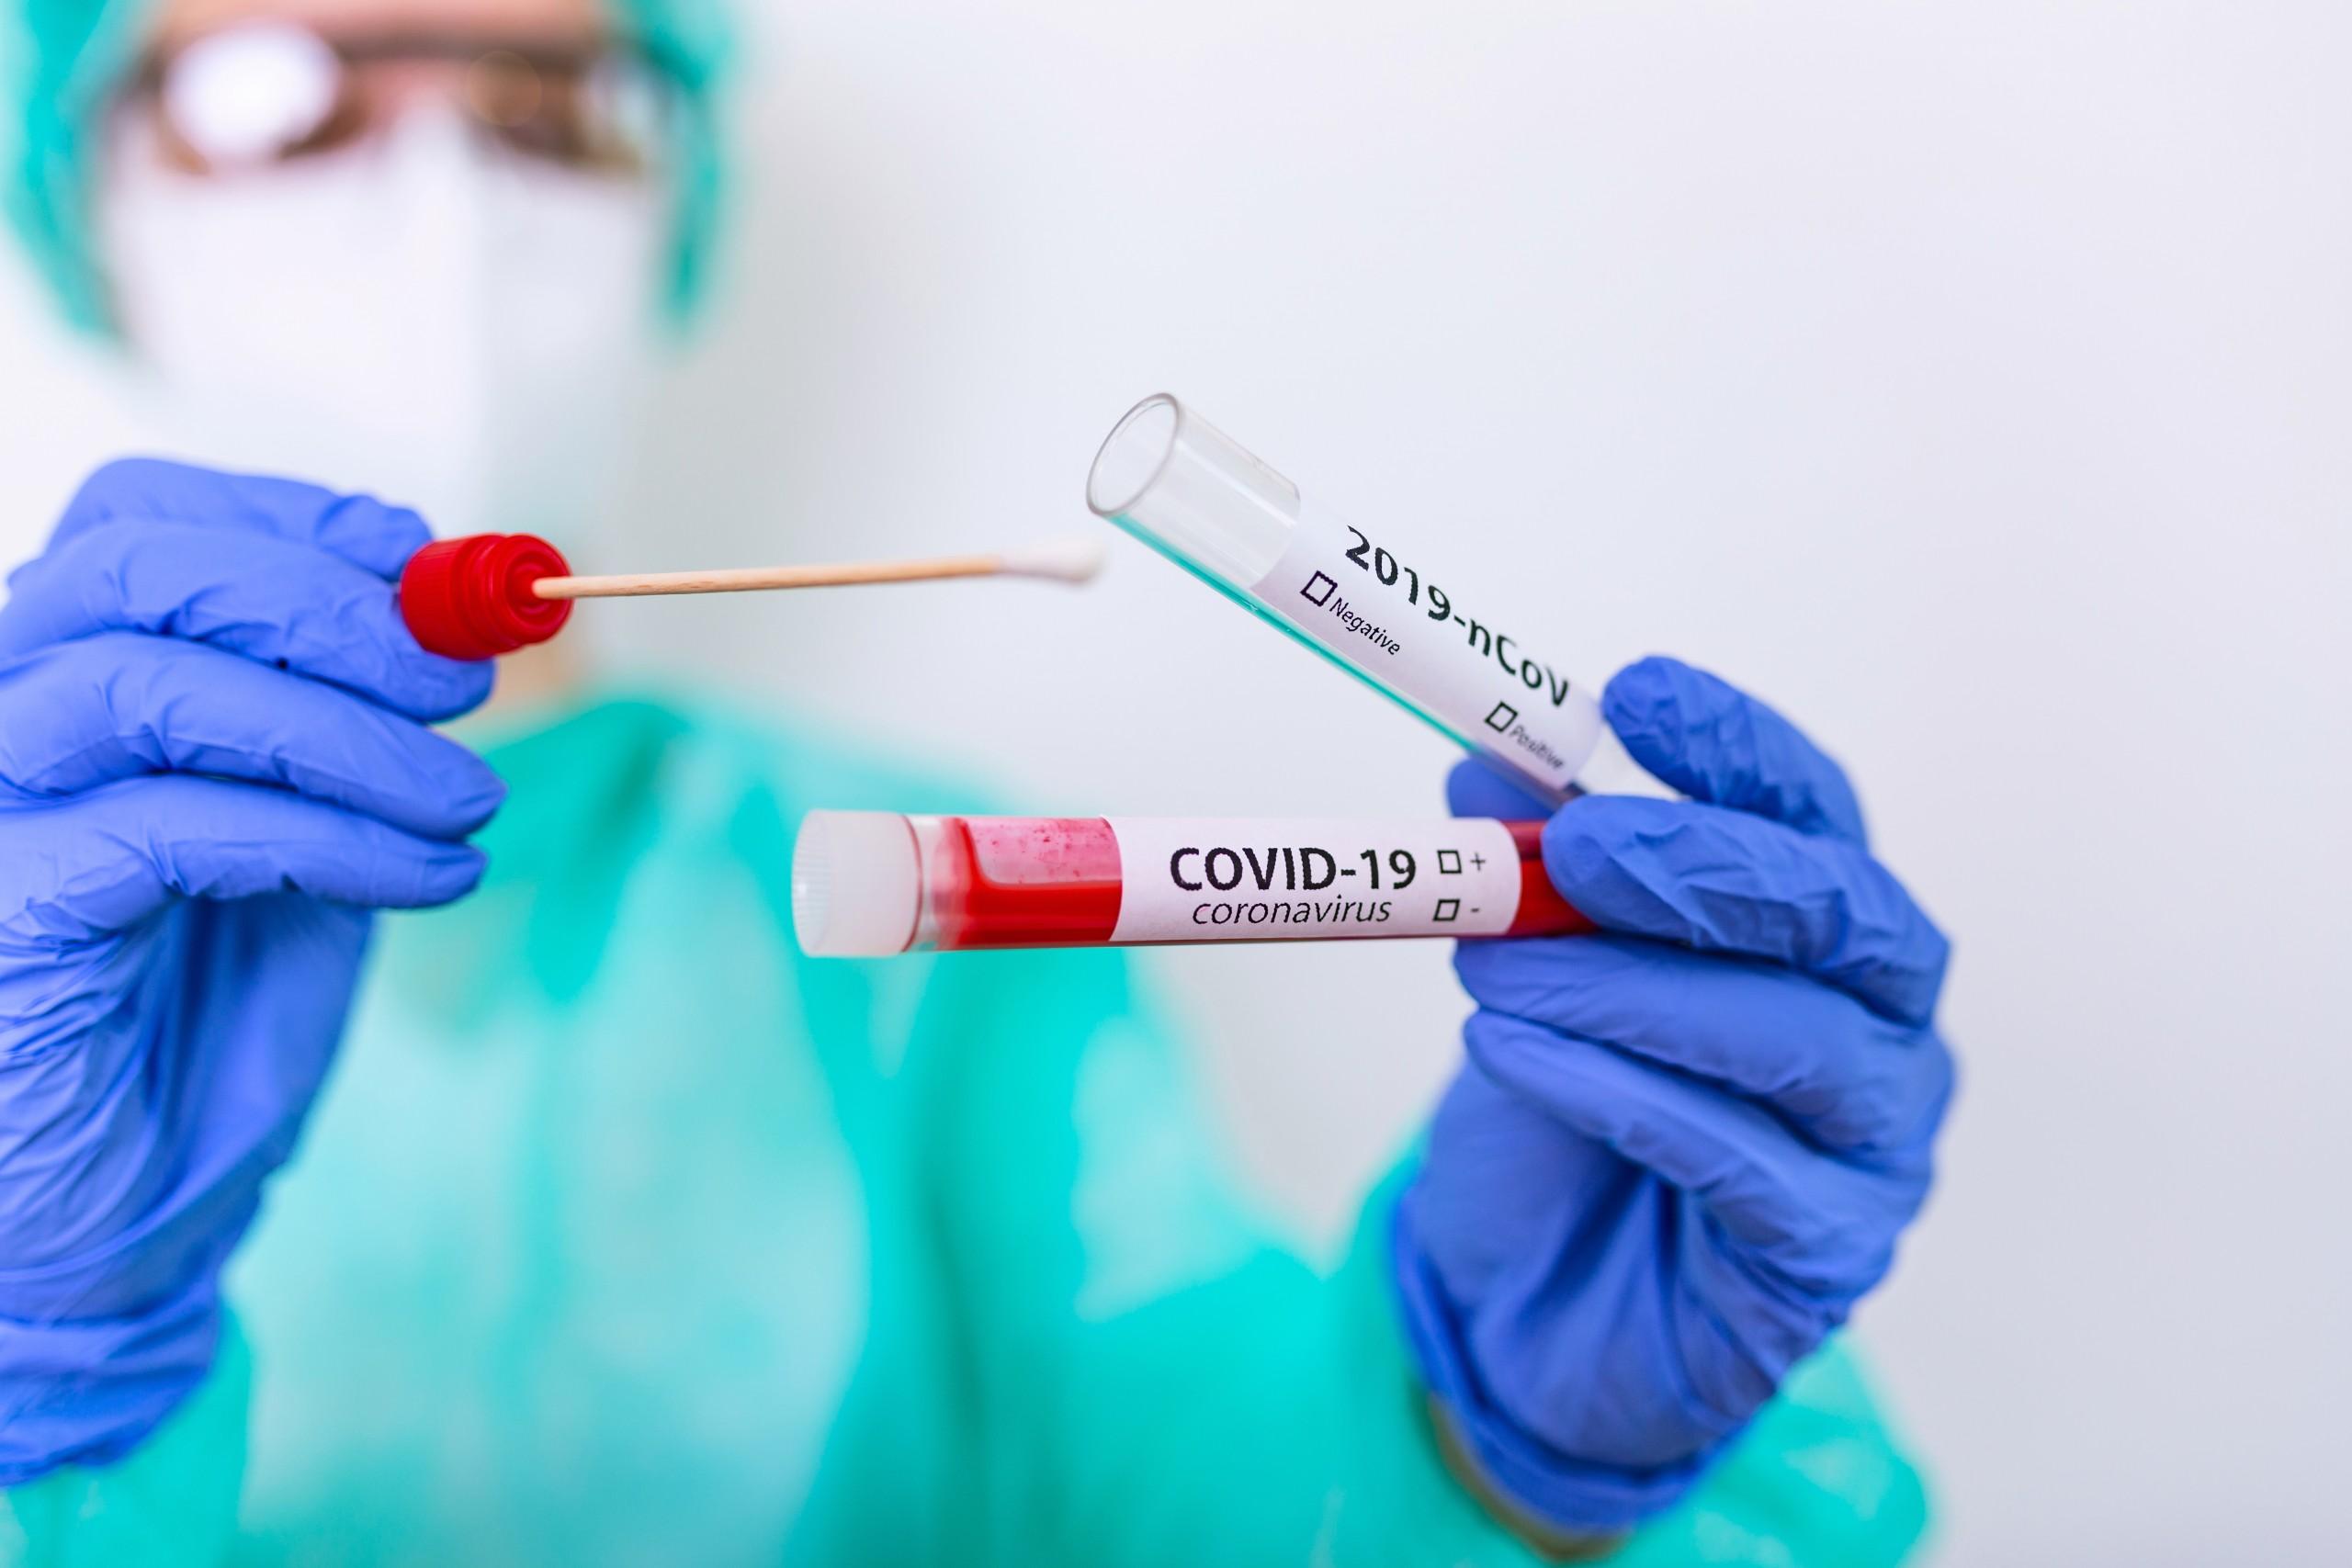 Isolata a Cesena una nuova variante del virus Sars-CoV-2